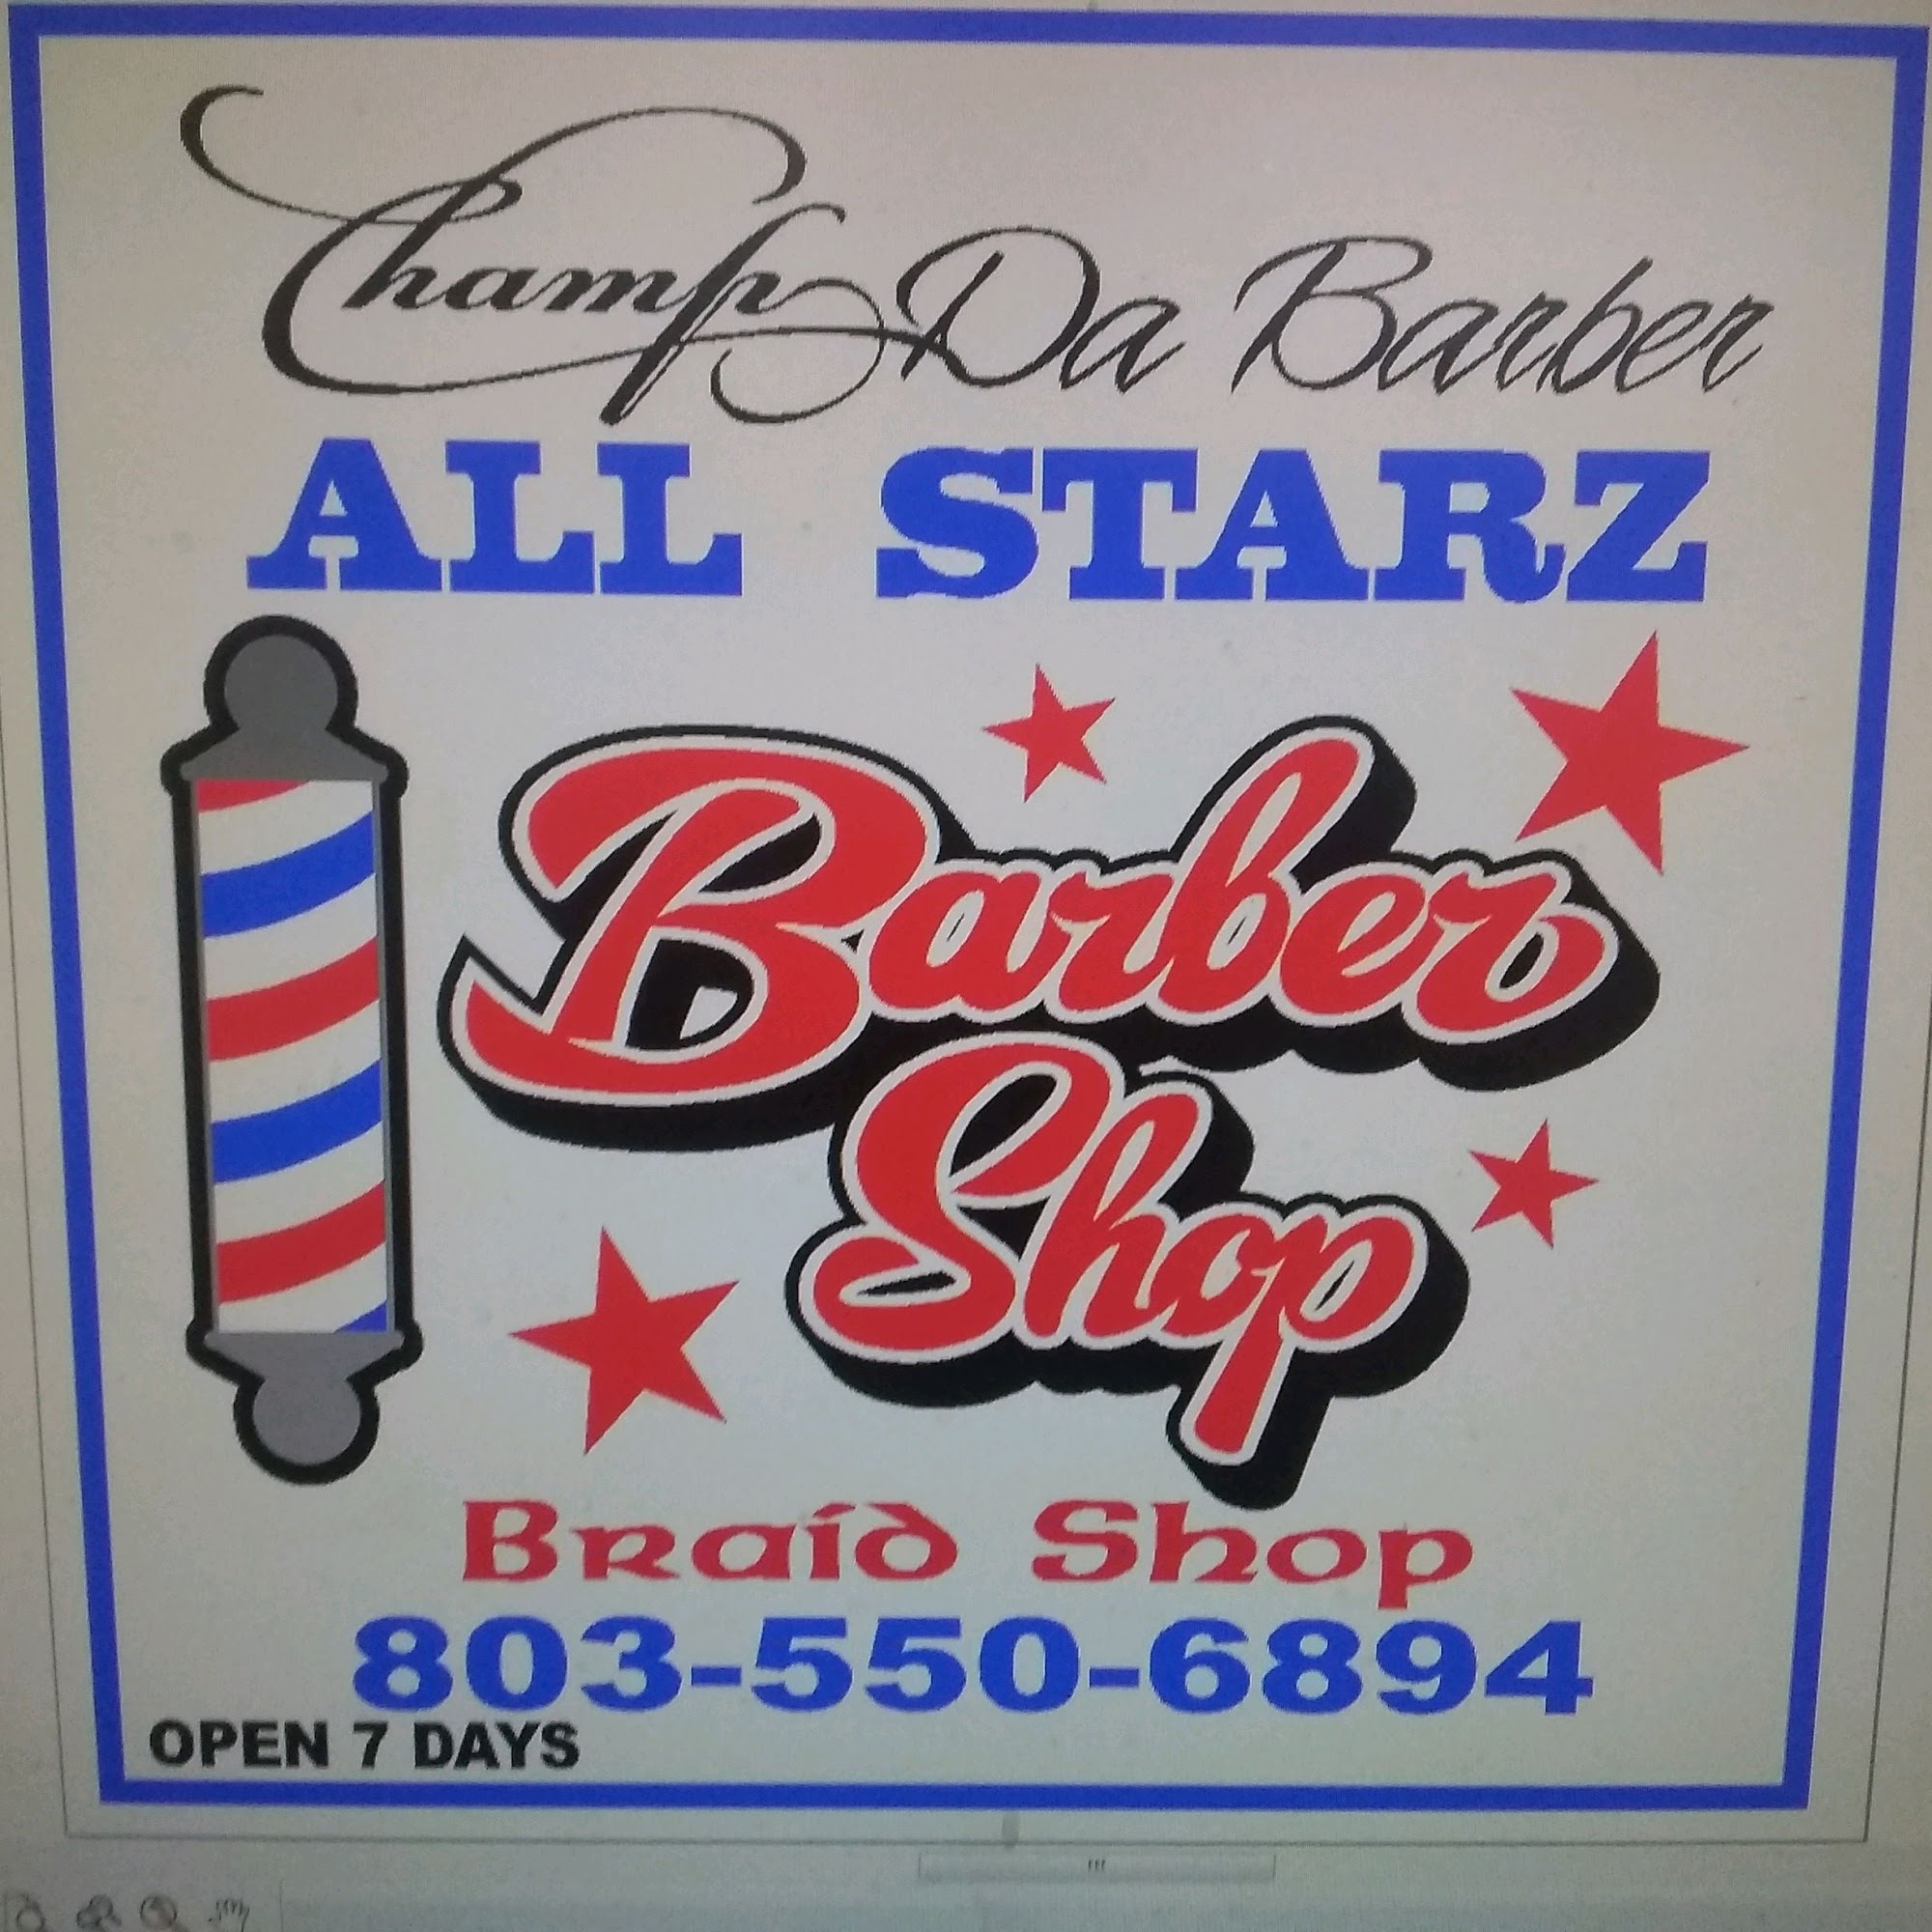 Champion Barbershop /Allstarz Braidshop